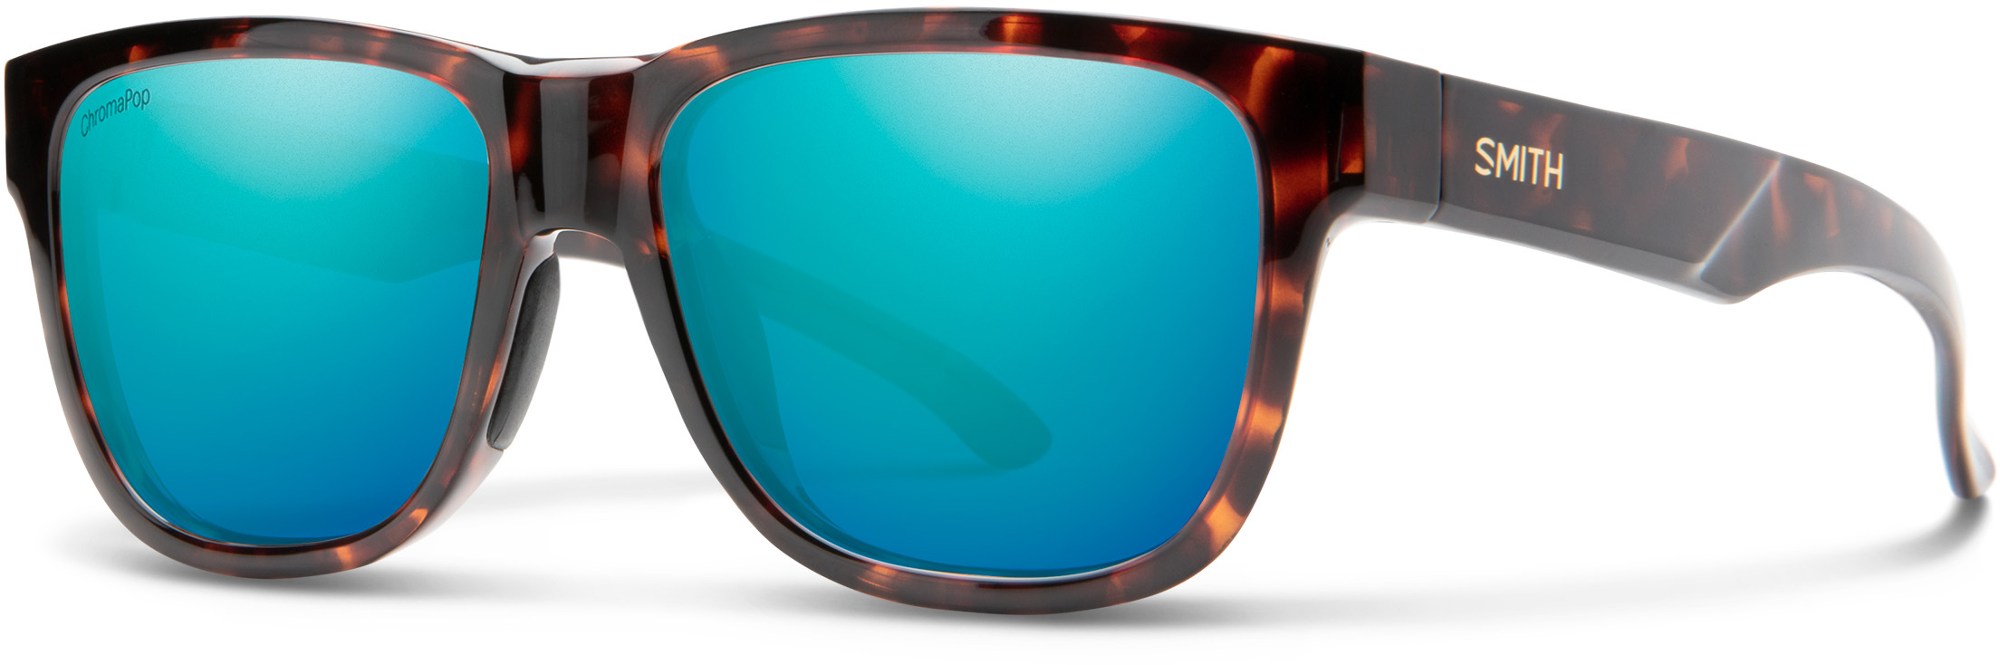 цена Поляризованные солнцезащитные очки Lowdown Slim 2 ChromaPop — женские Smith, коричневый